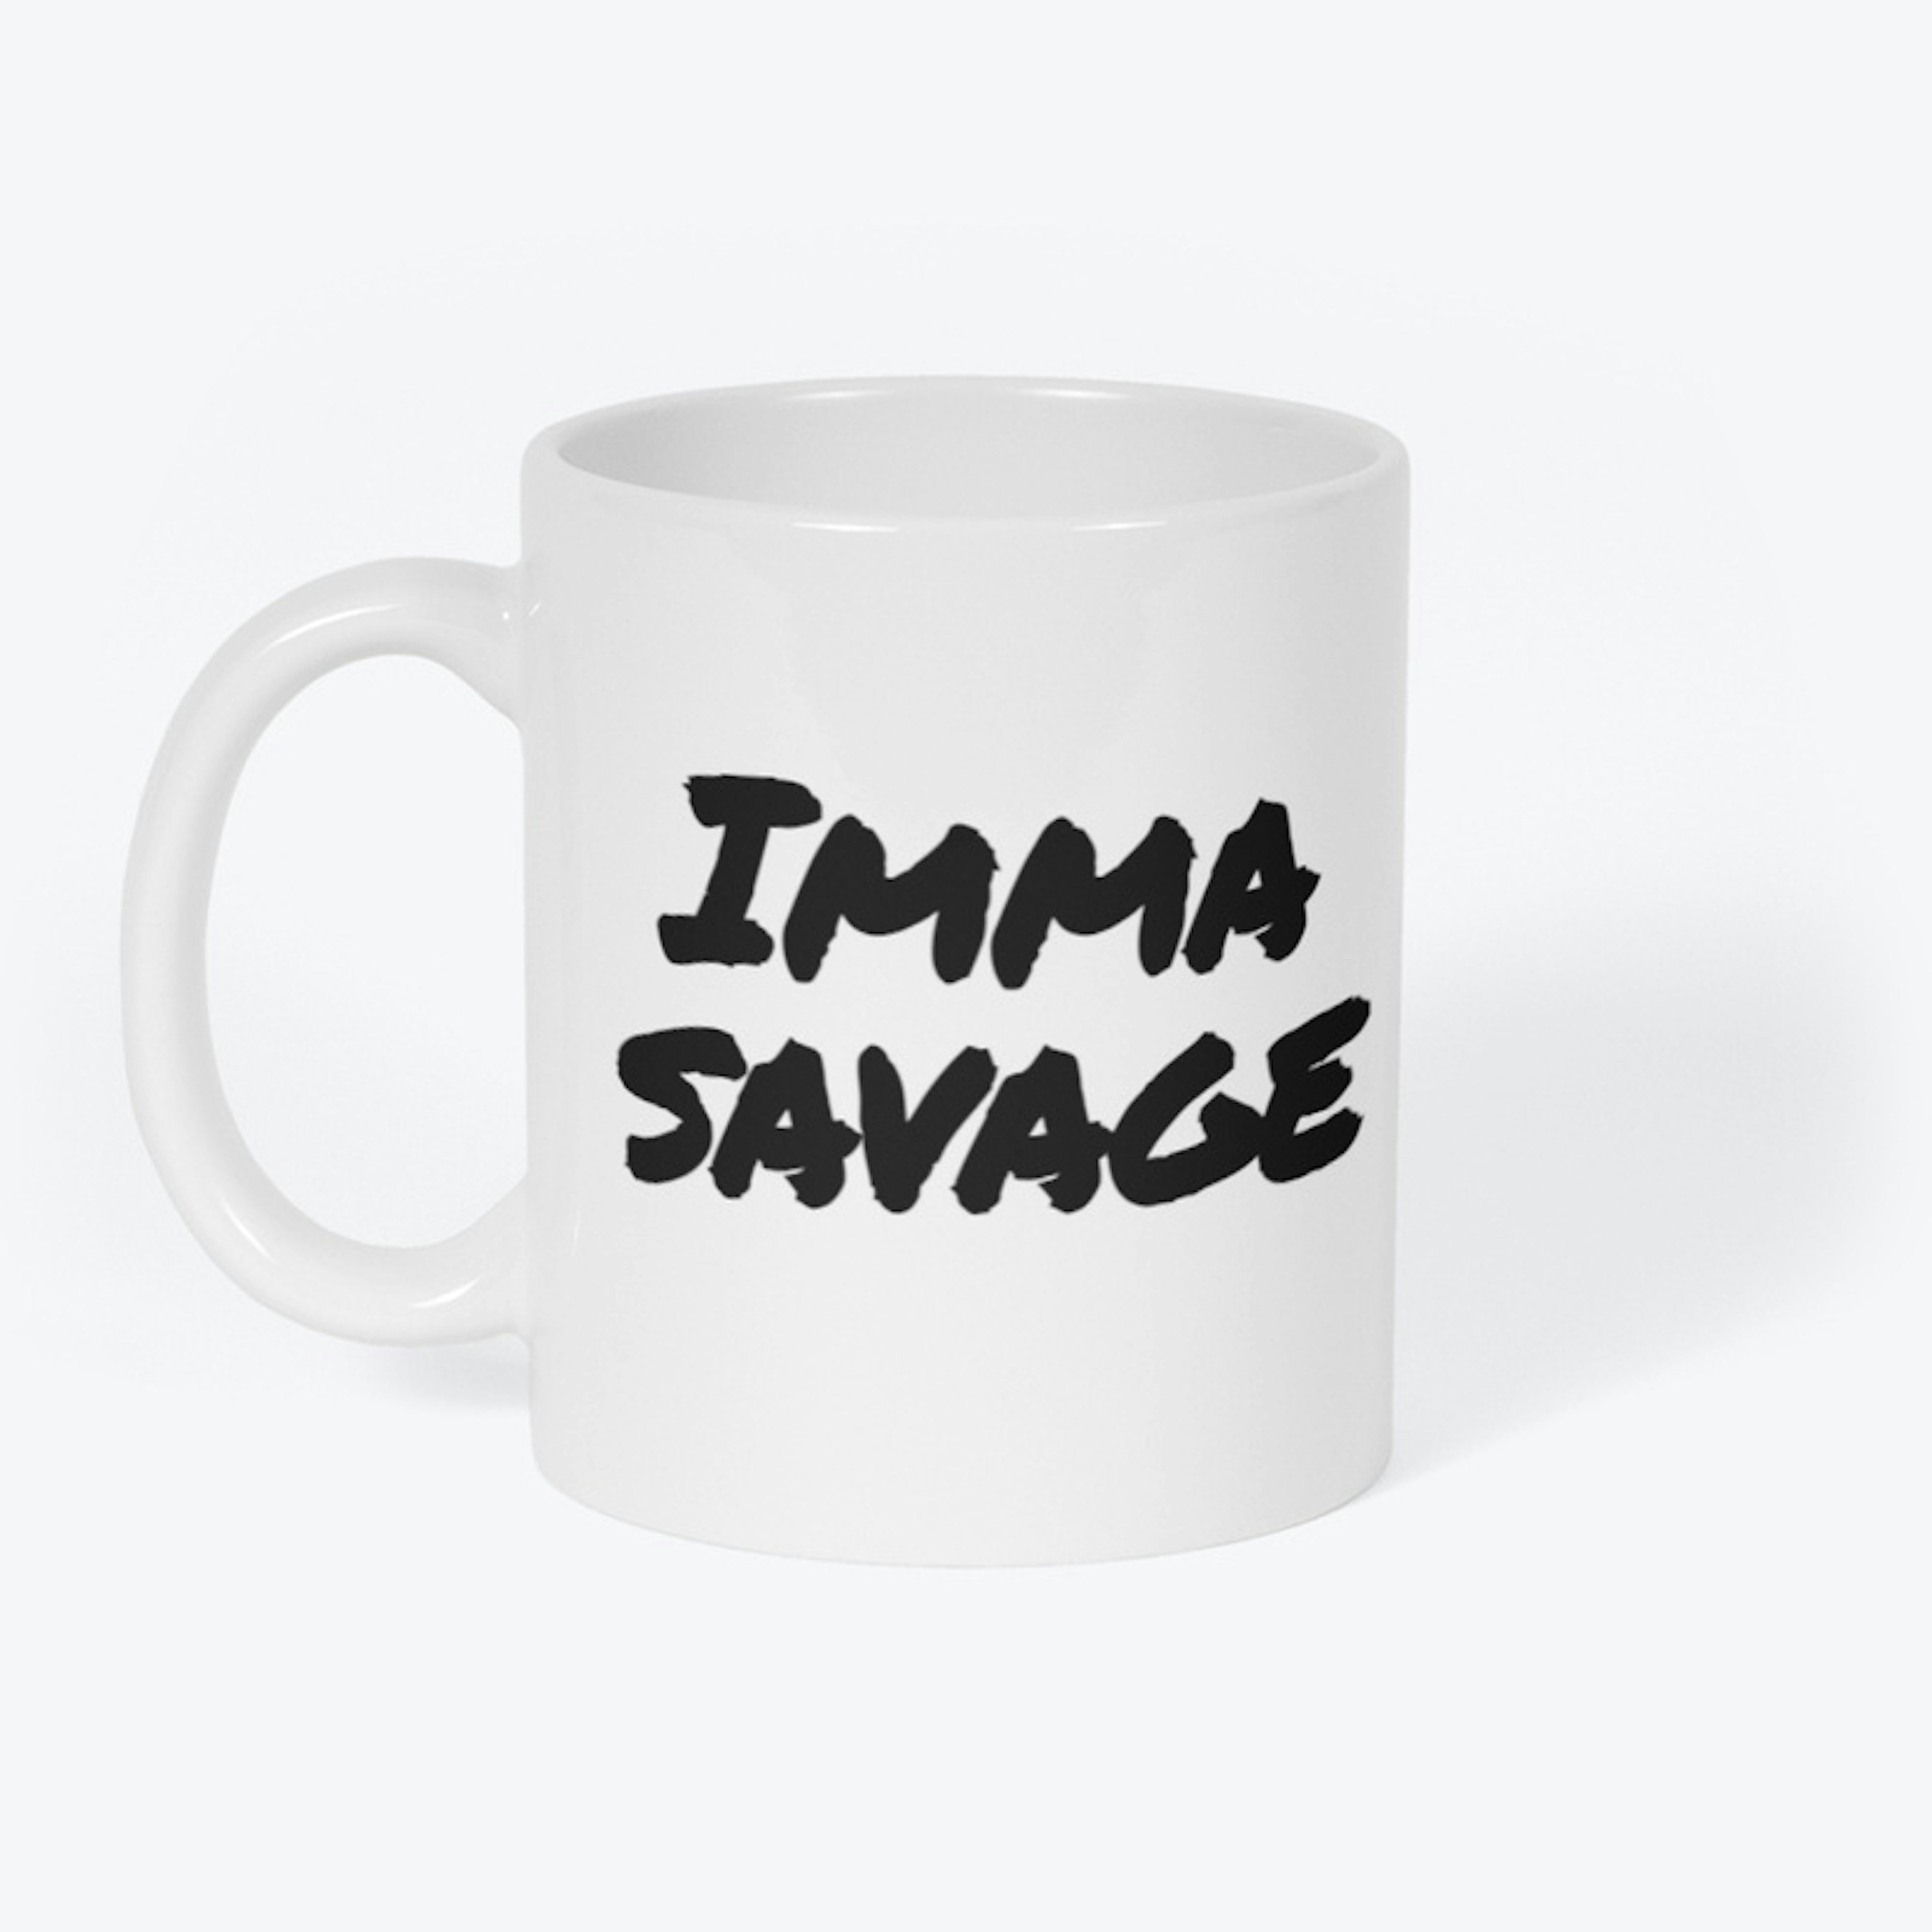 Imma Savage Mug